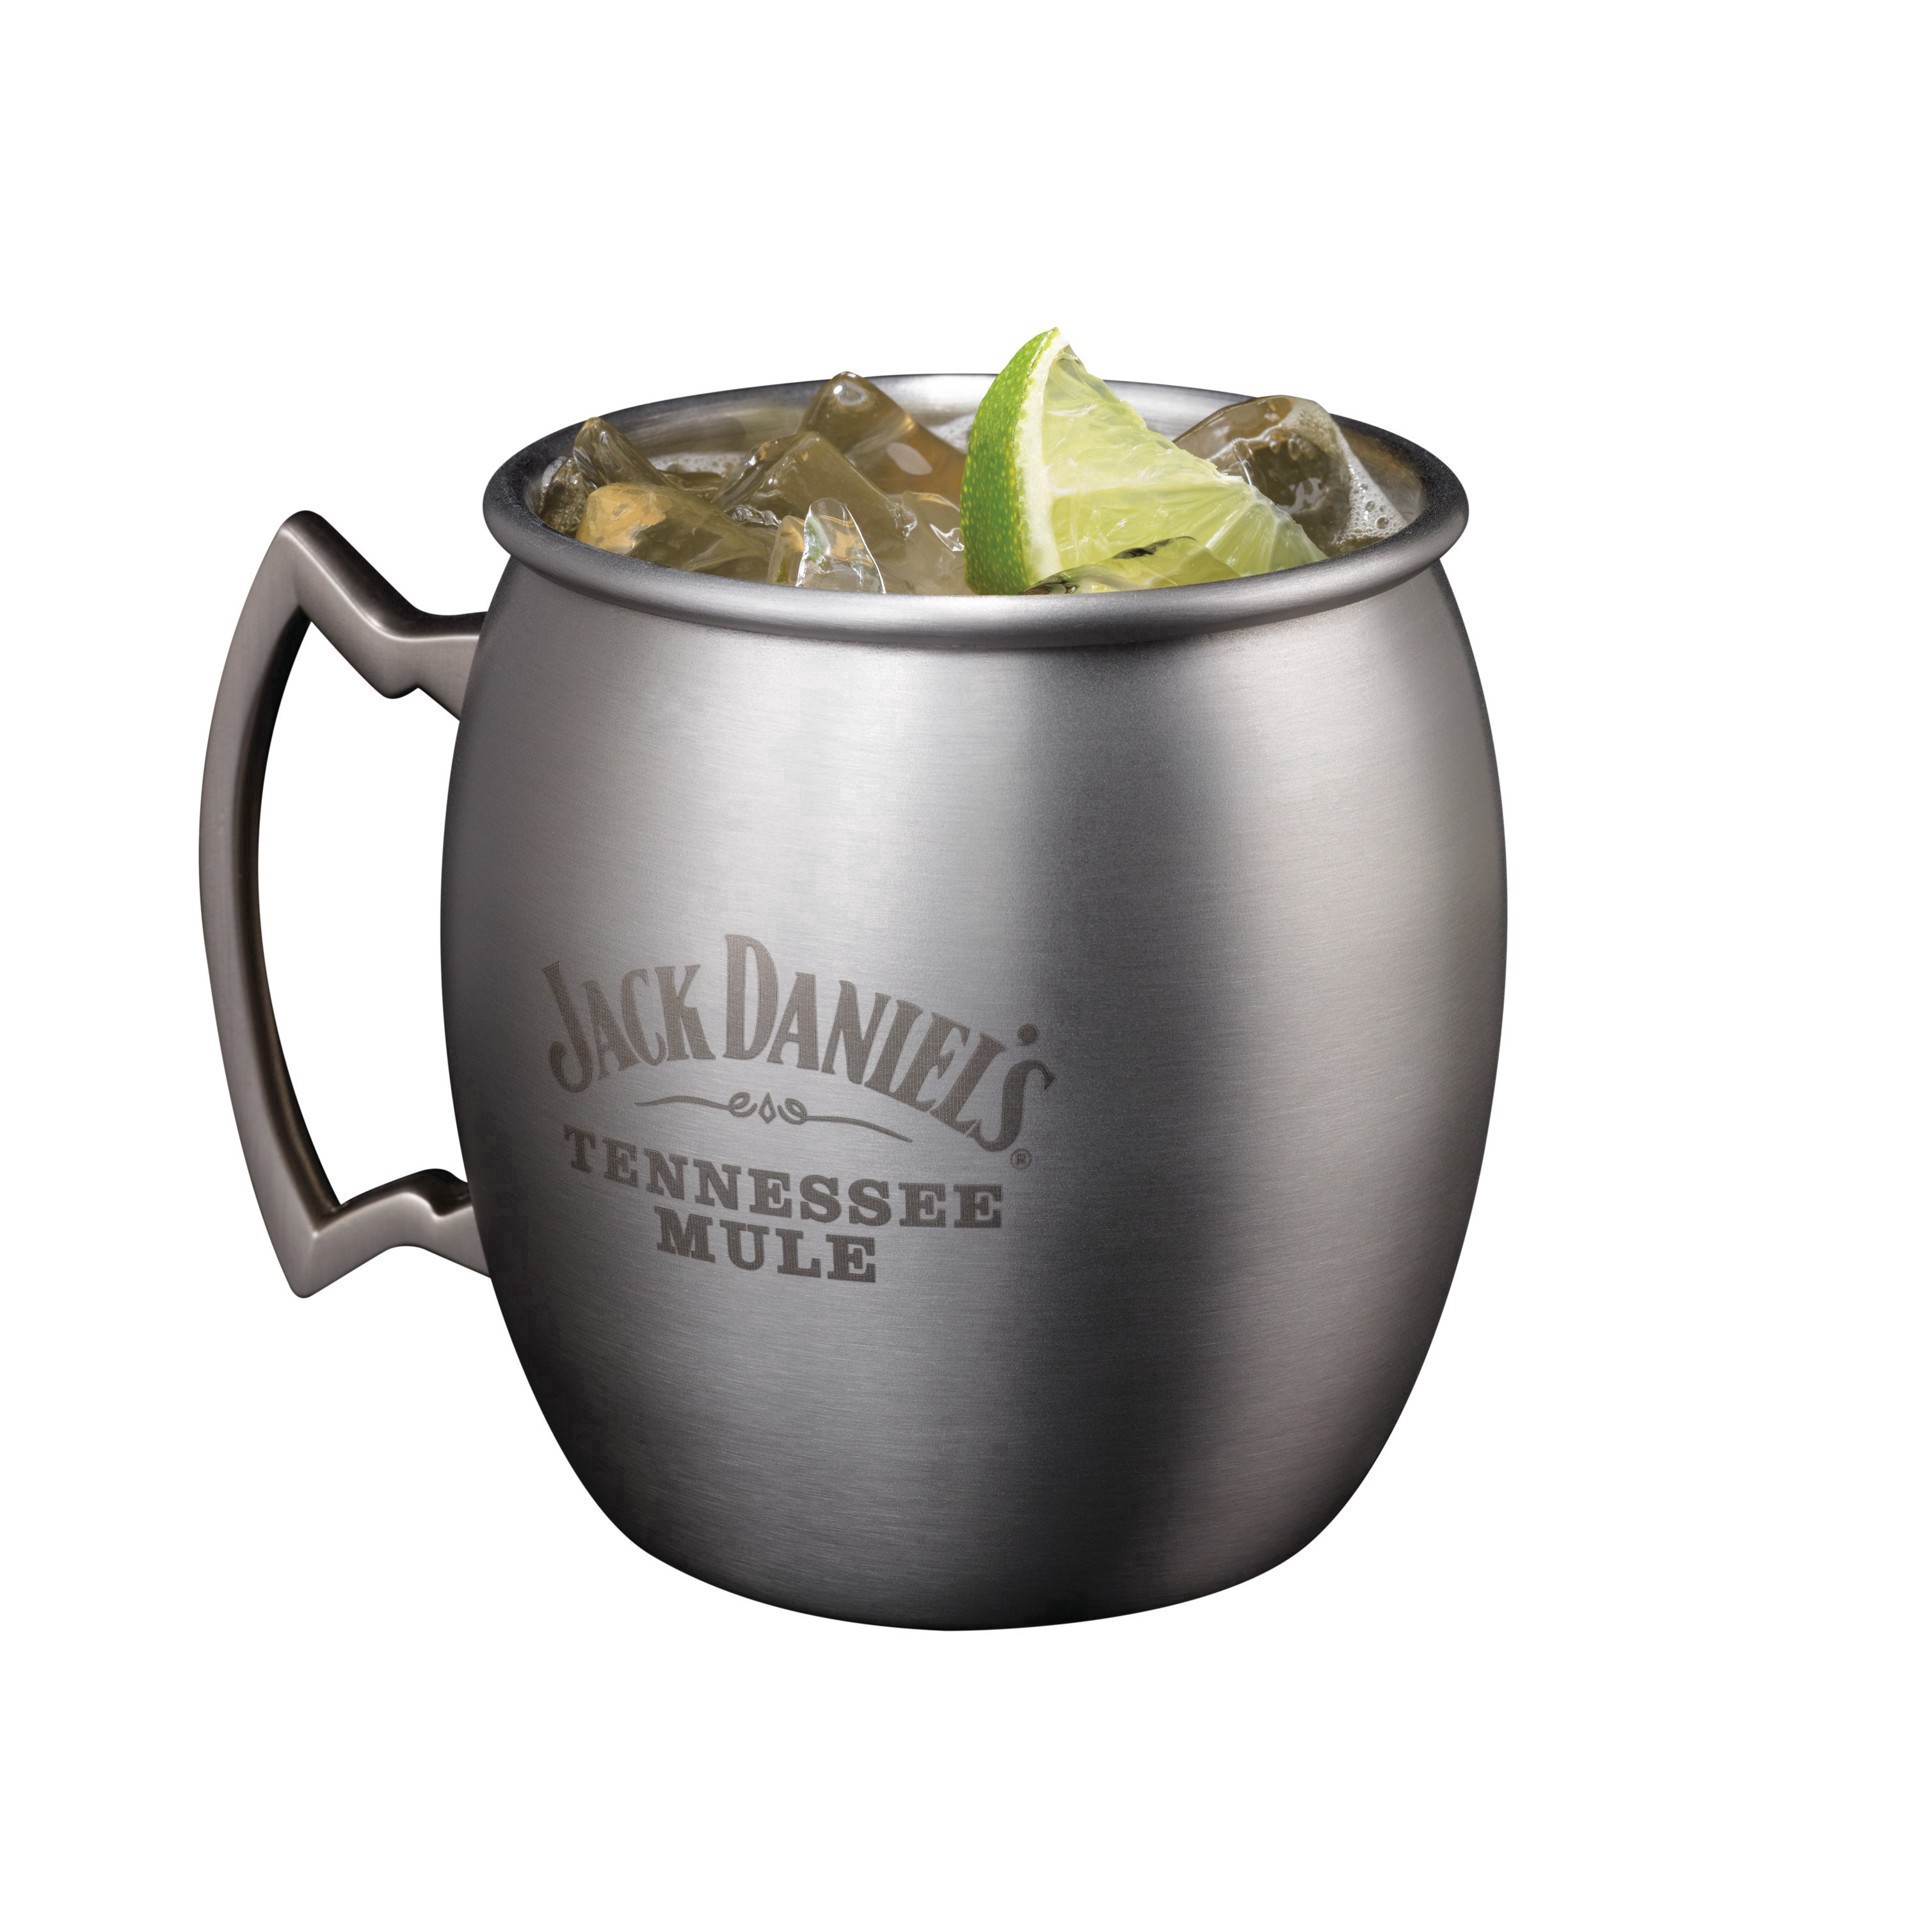 slide 14 of 25, Jack Daniel's Tennessee Whiskey, 1.75 liter